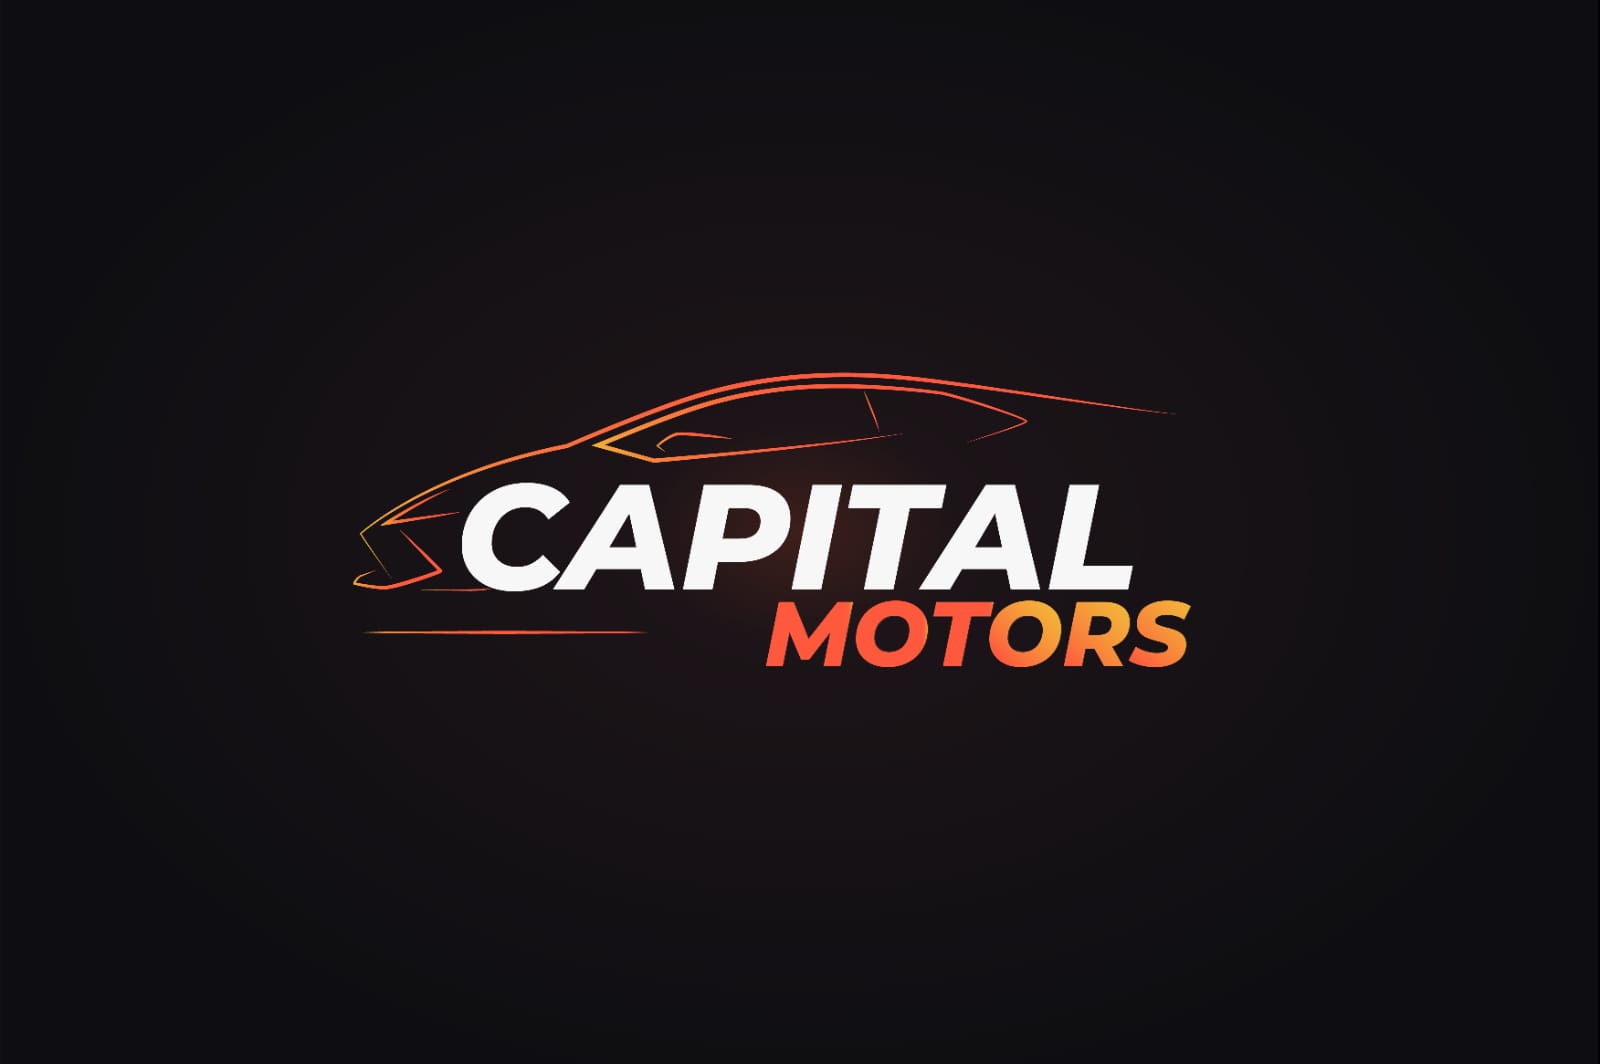 Capital Motors